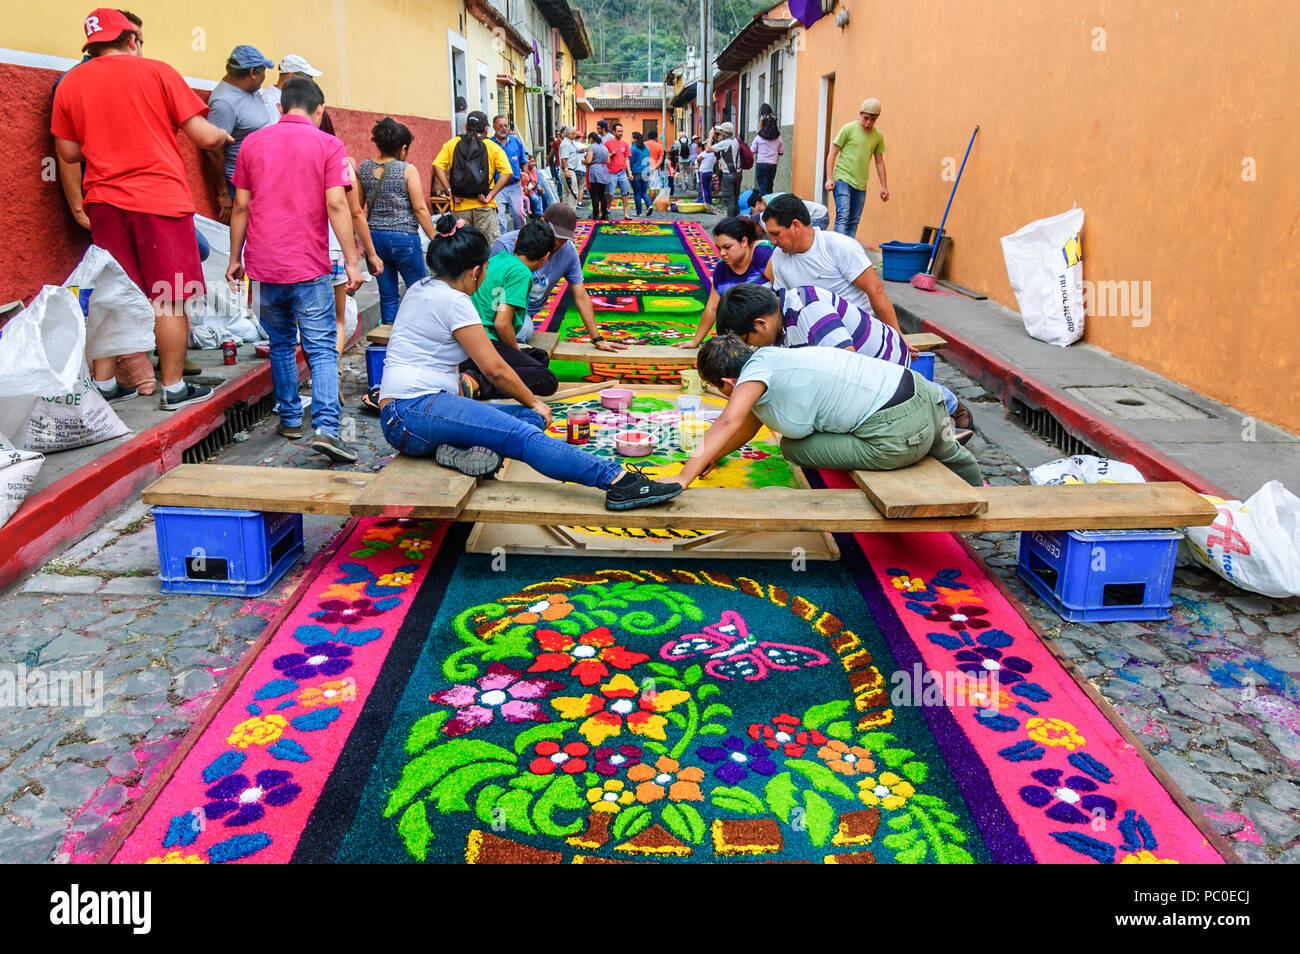 Antigua, Guatemala - April 2, 2015: Einheimische gefärbte Sägespäne Prozession Teppiche in der Stadt machen, mit dem berühmtesten Feierlichkeiten zur Karwoche in Lateinamerika. Stockfoto